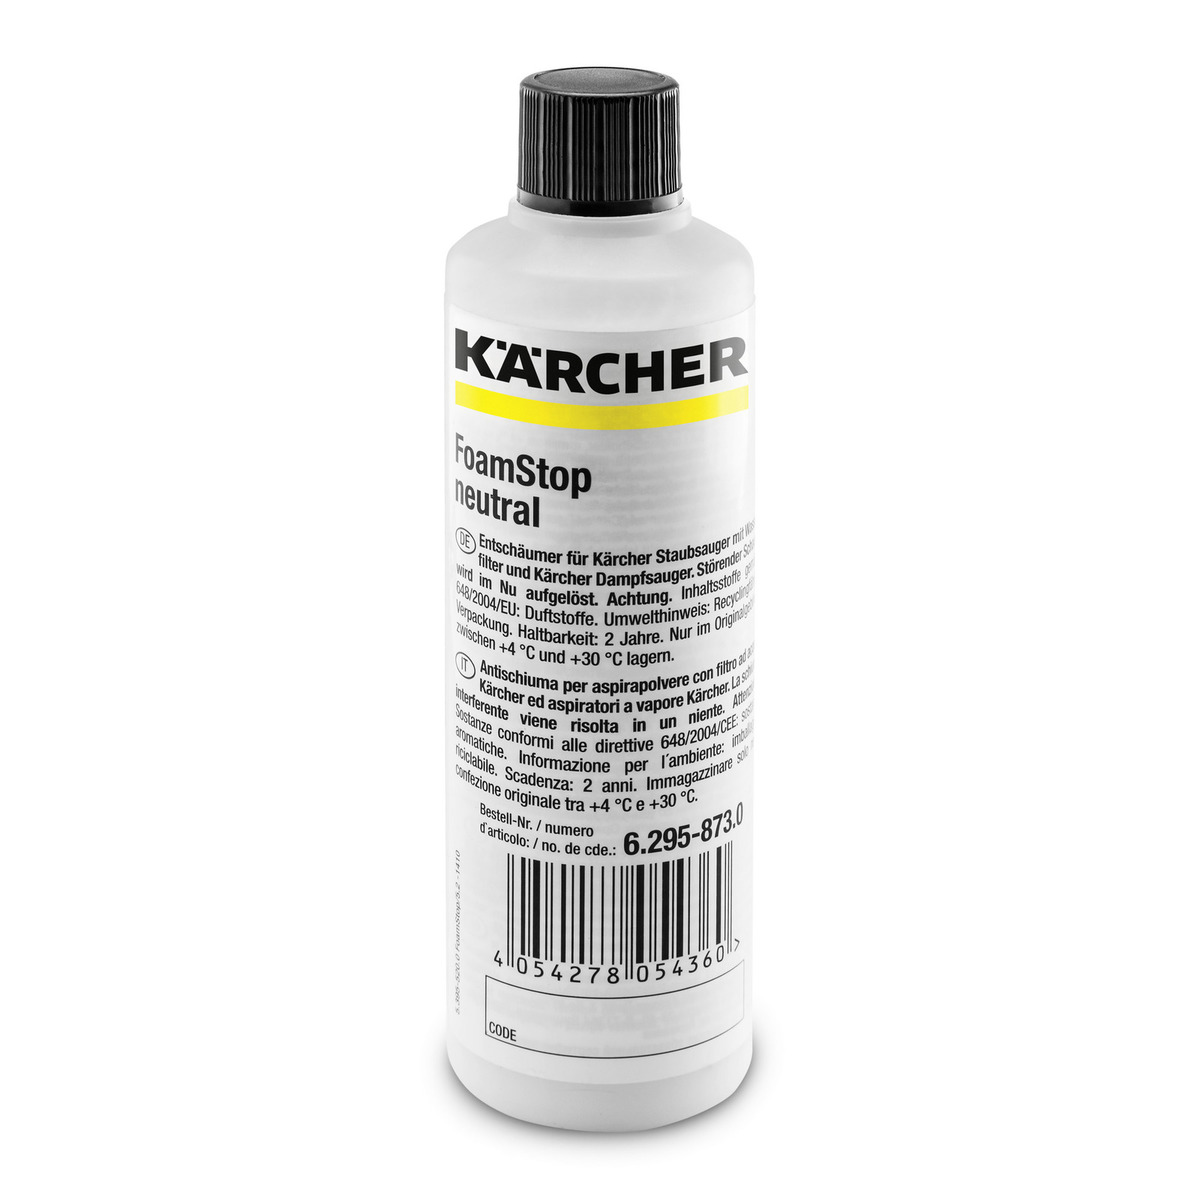 Kärcher - FoamStop neutral 125ml